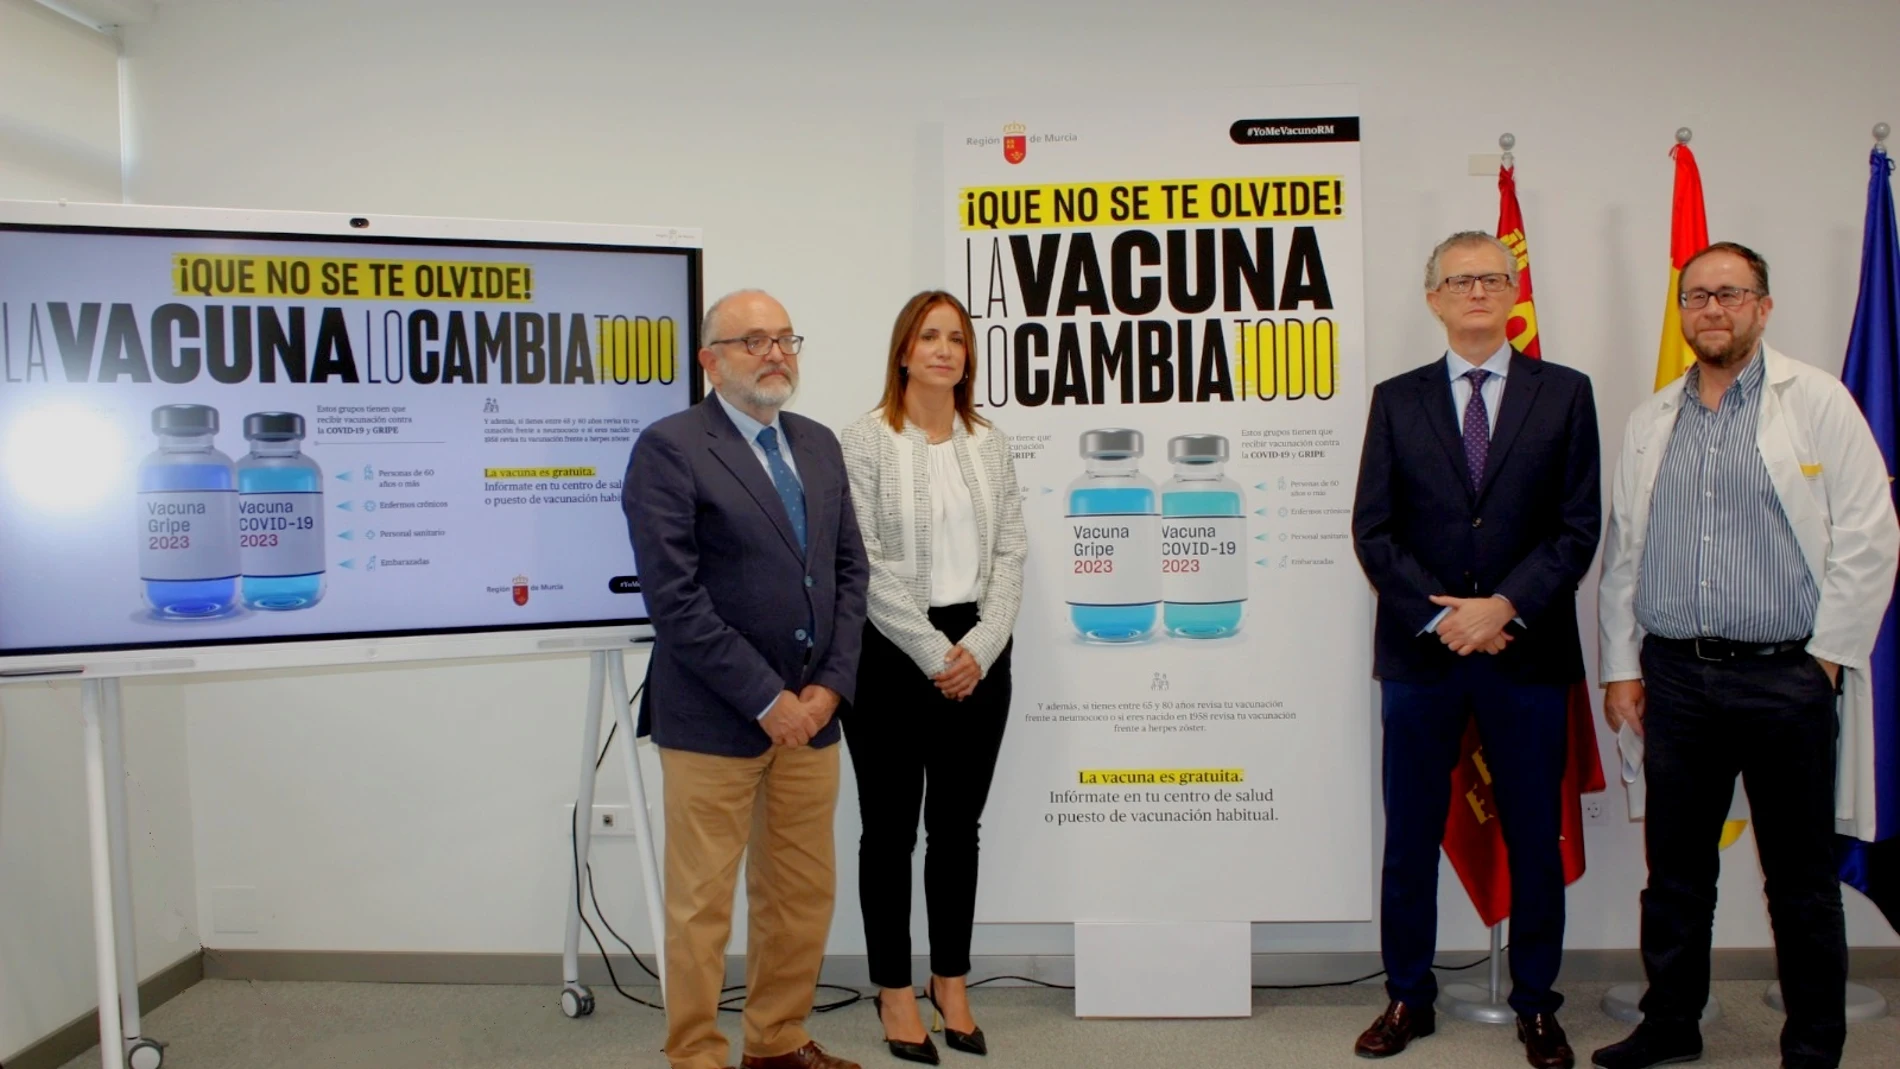 El consejero de Salud, Juan José Pedreño, facilitó hoy los detalles de la campaña de vacunación frente a la gripe